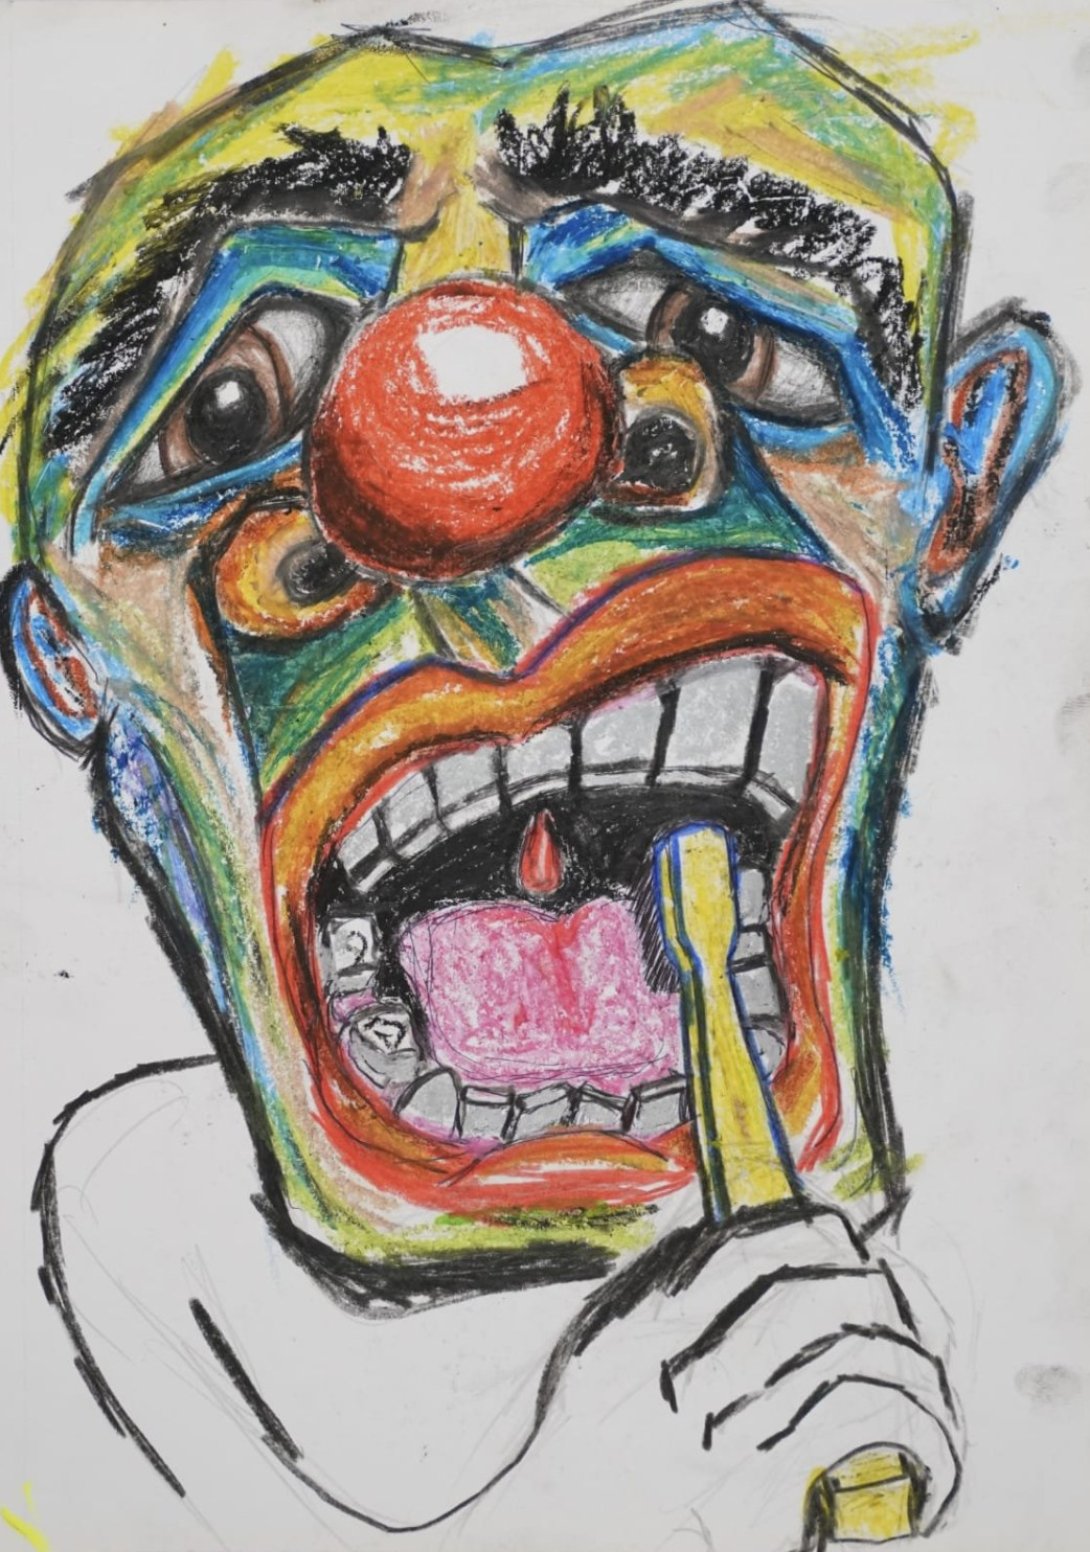 De la serie "Payasos", s/t, 2021. Tinta, grafito y crayola sobre papel. 